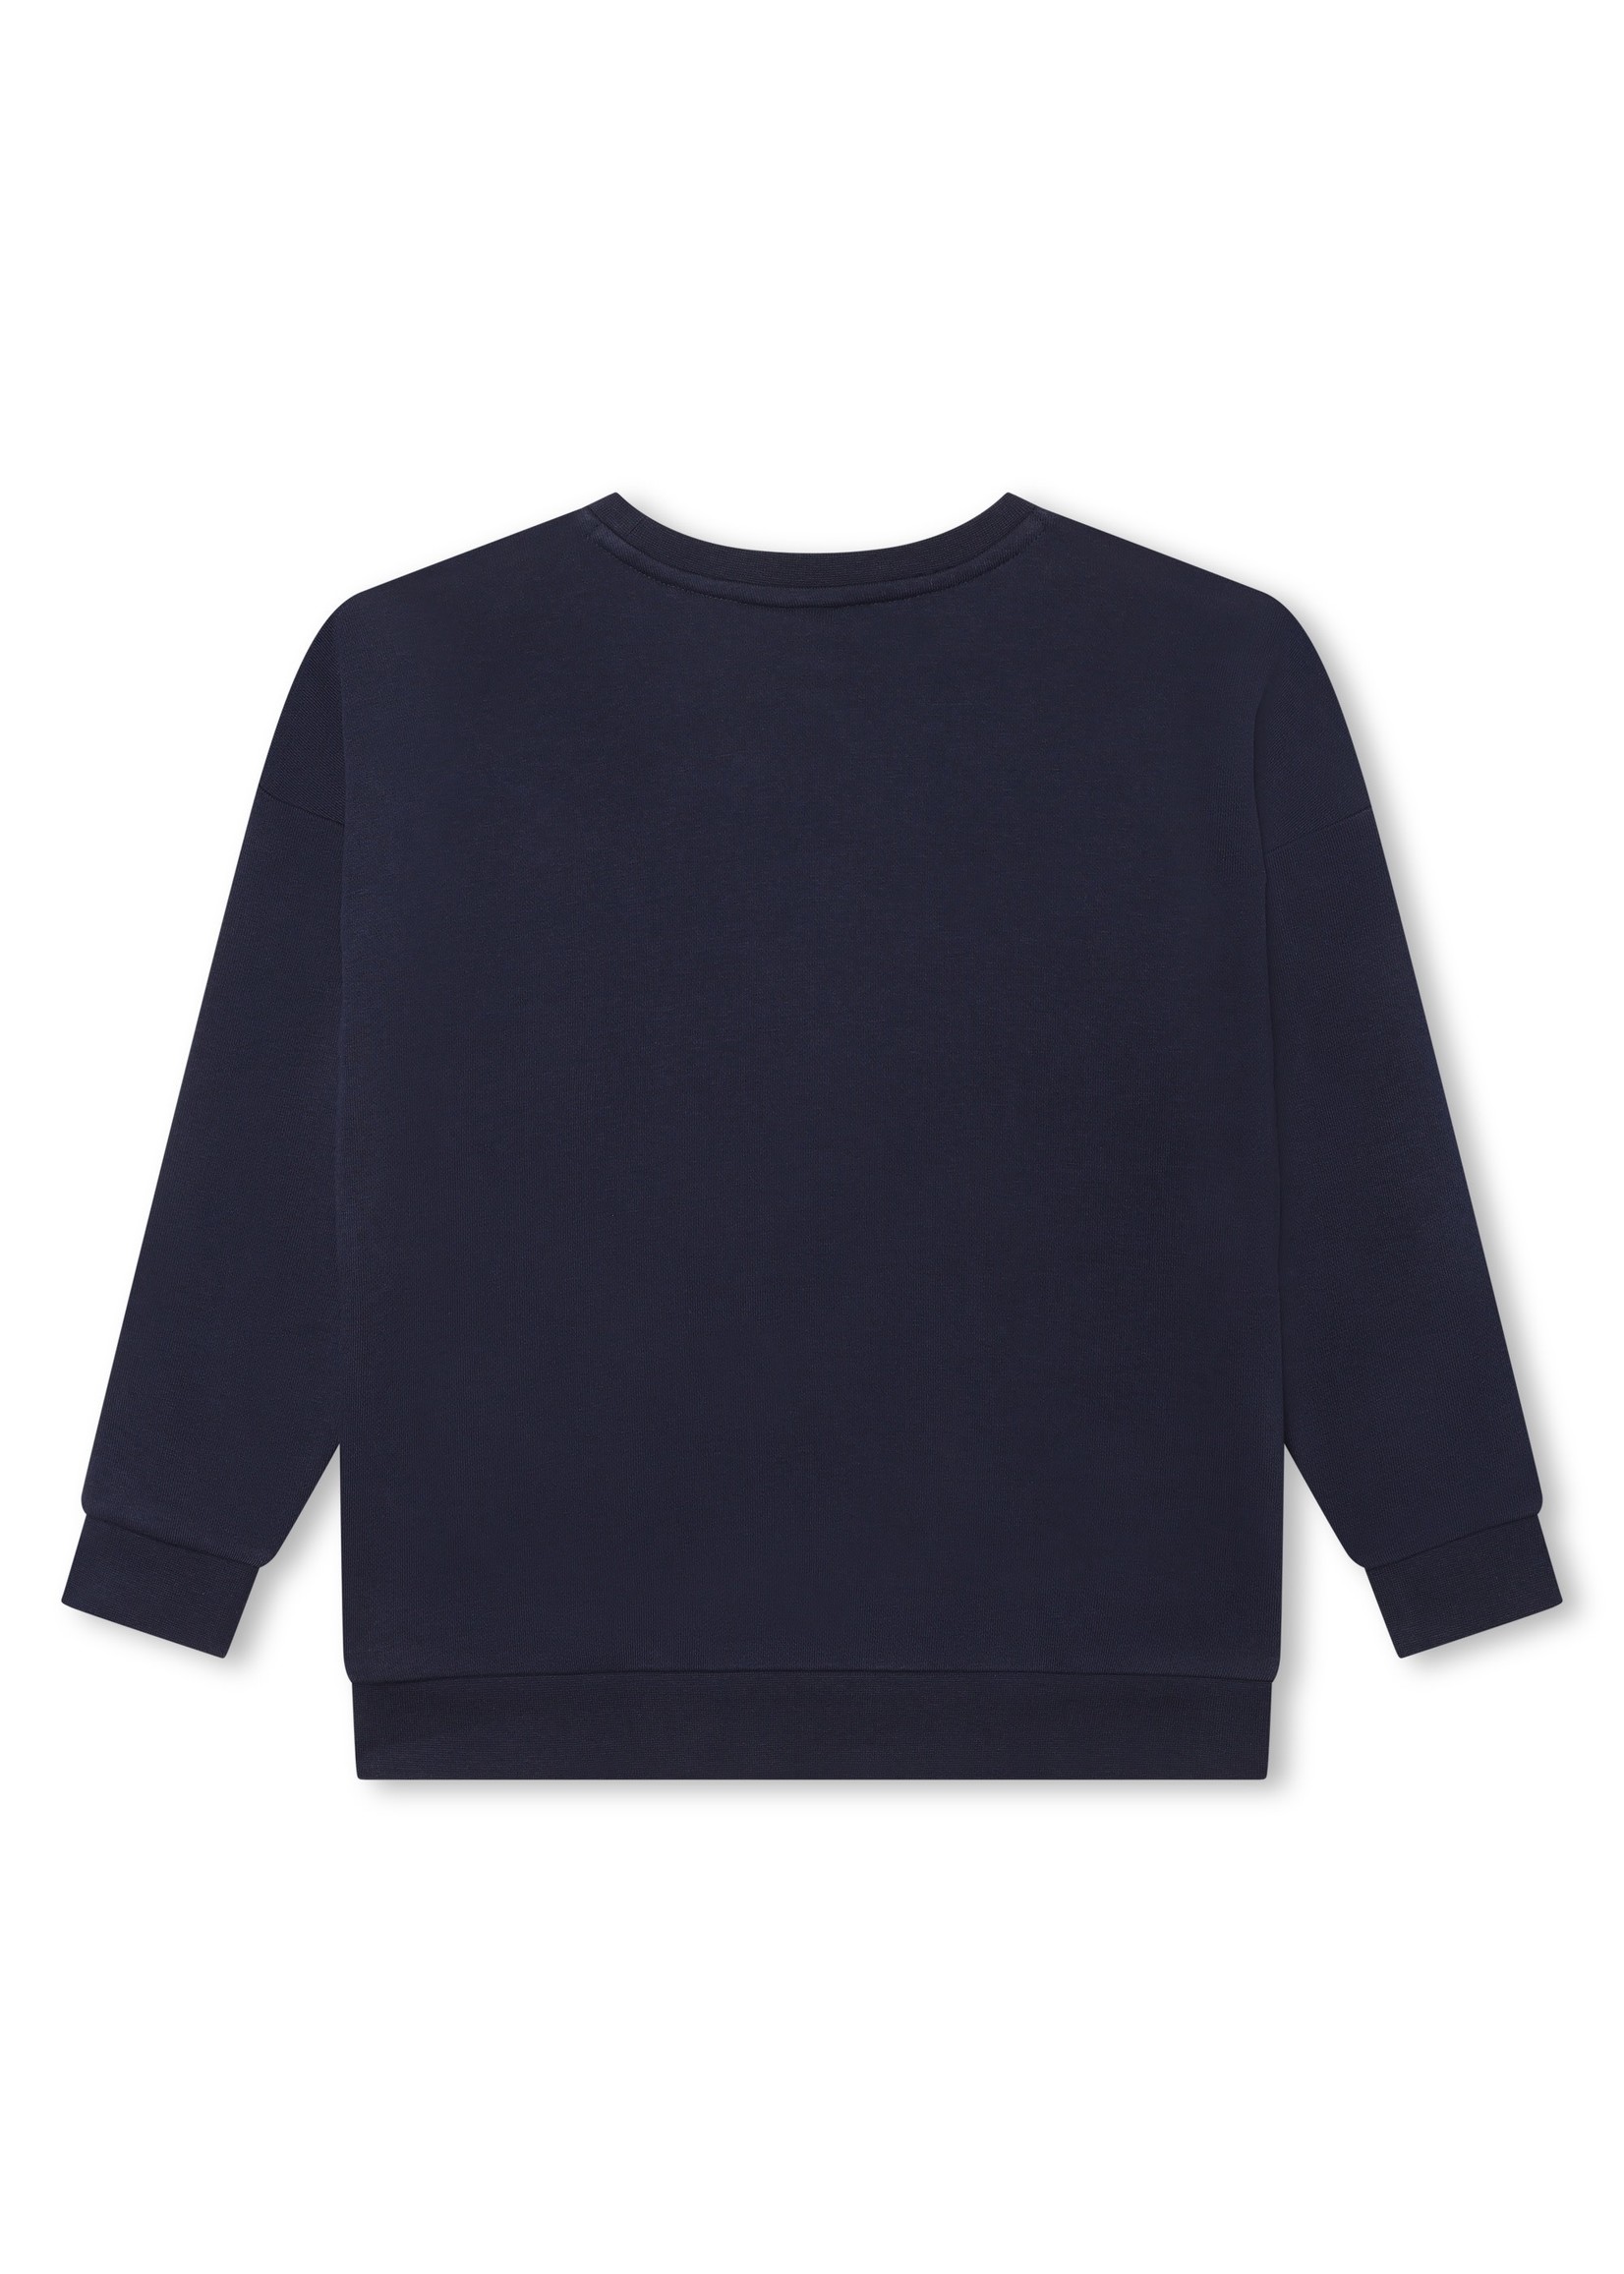 BOSS BOSS sweater navy blue - J25O41